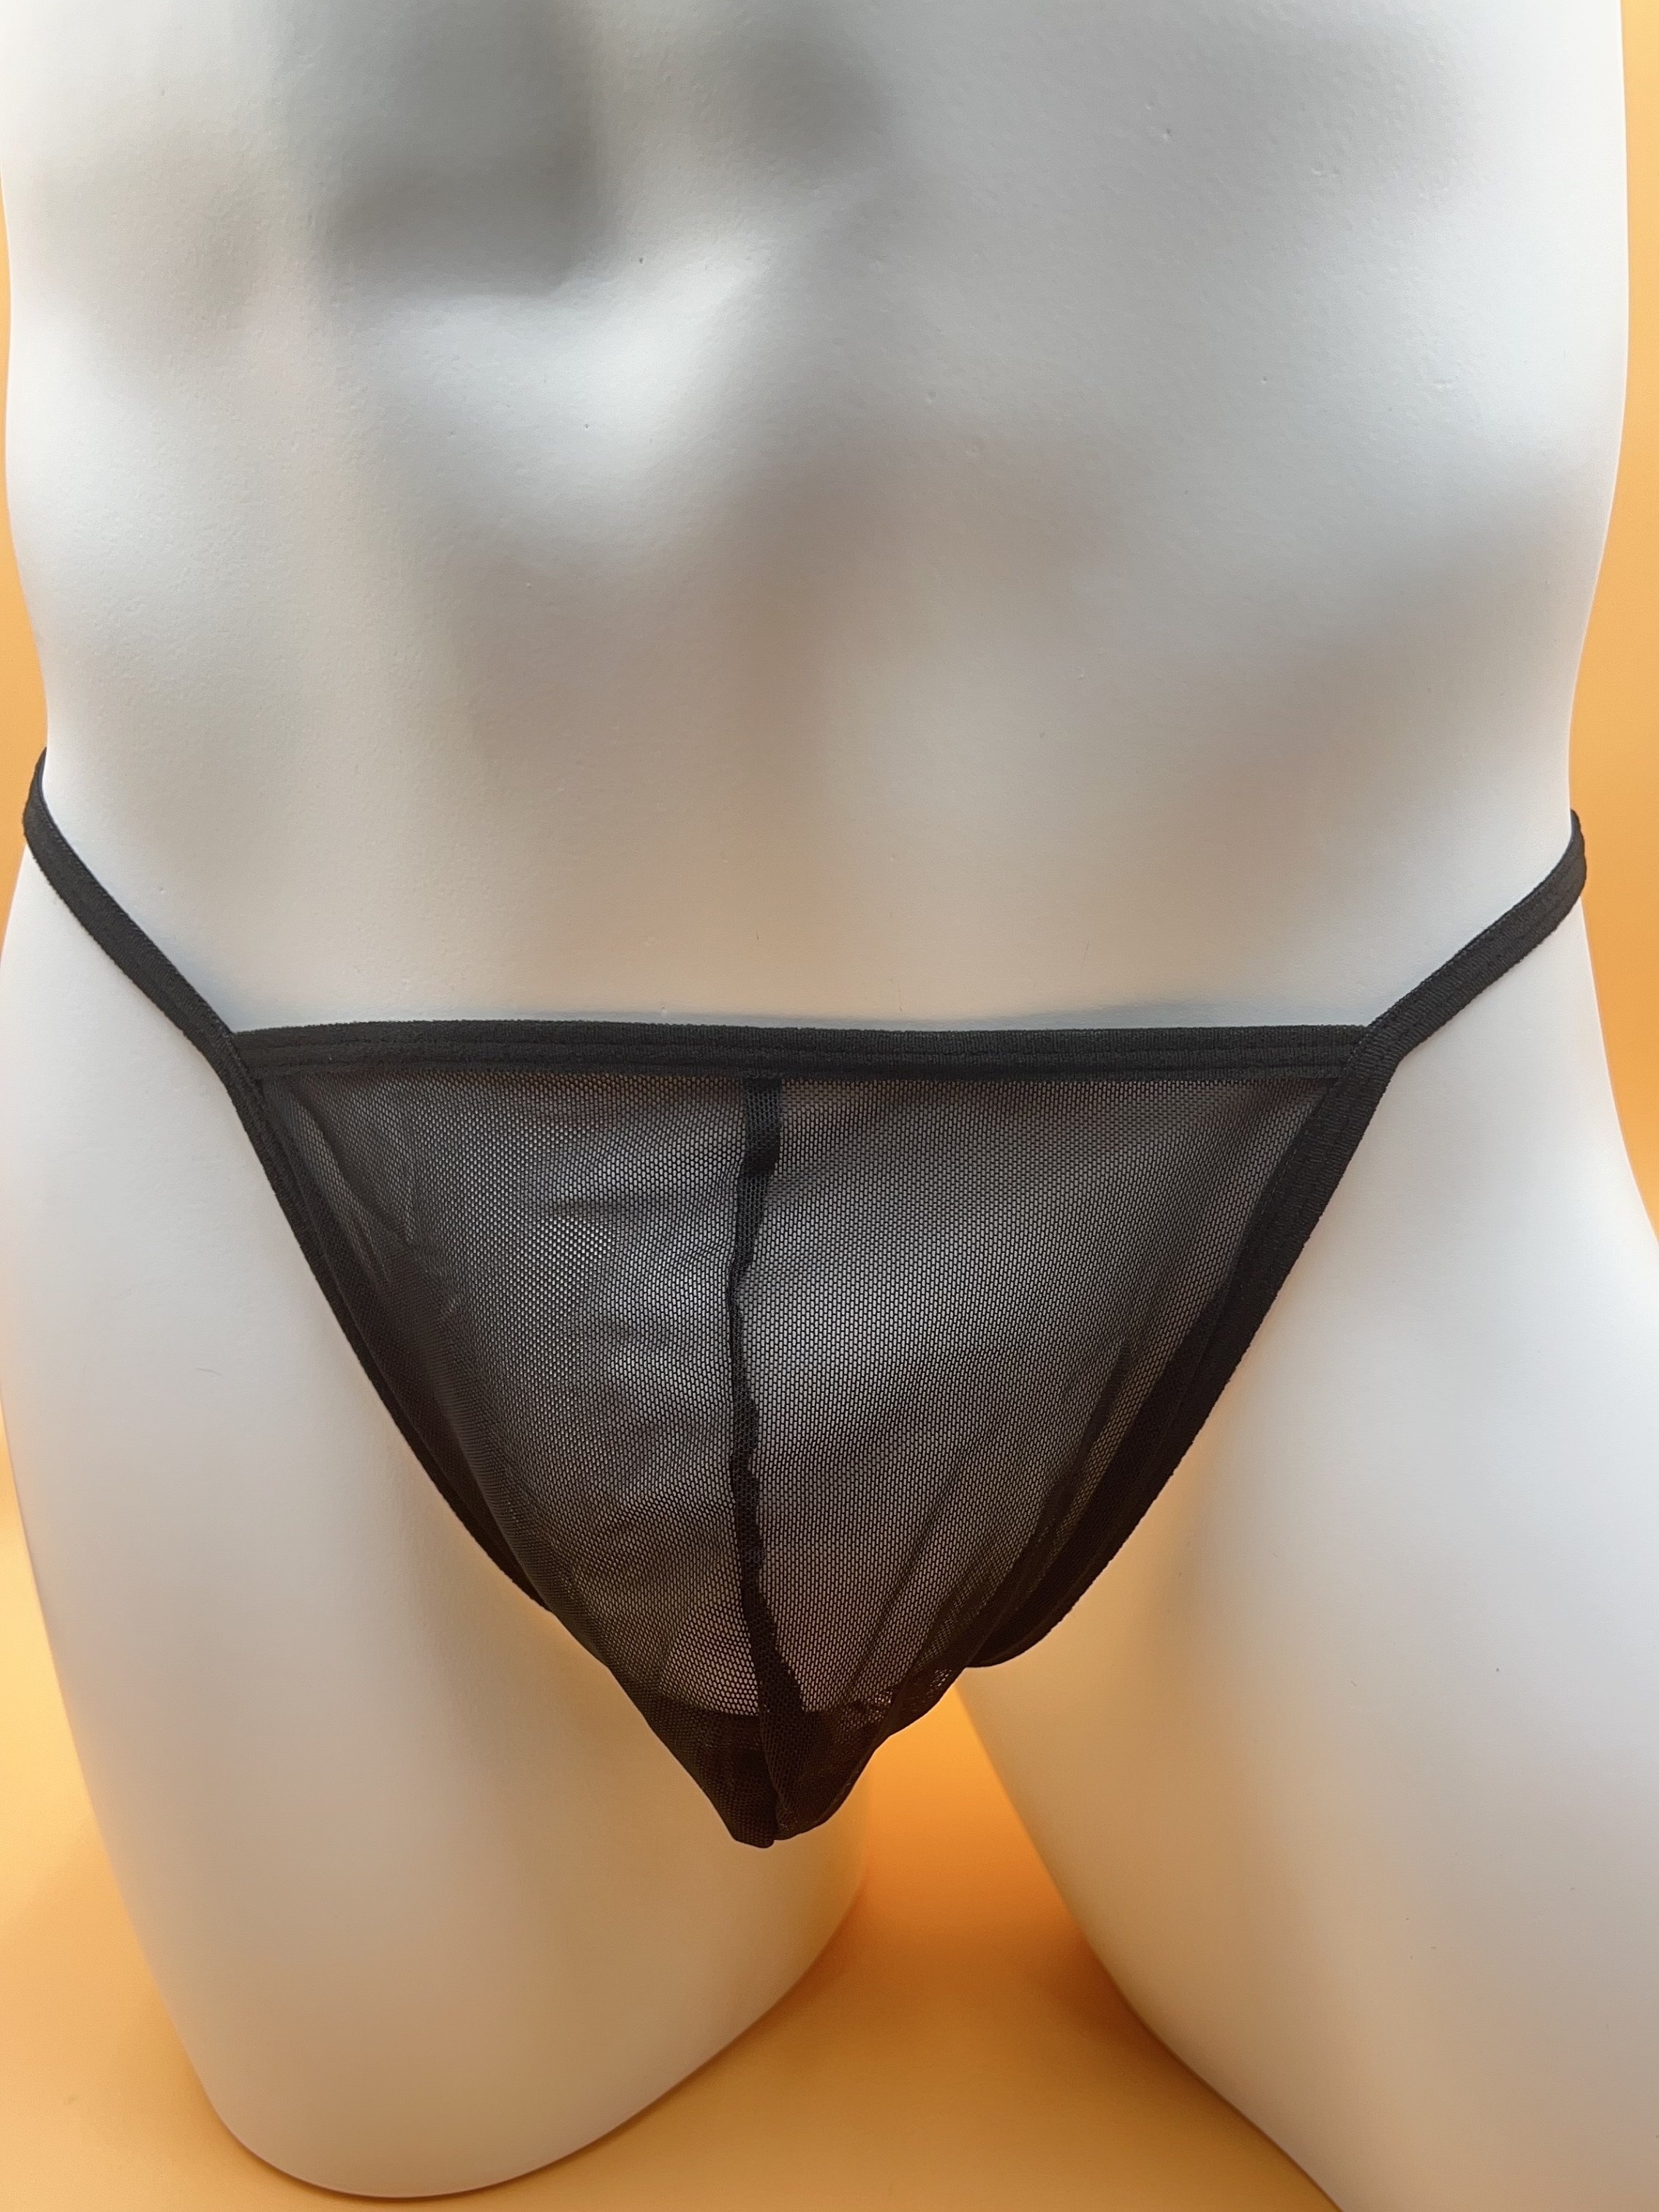 Men's G-String Fishnet See-through Thongs Underwear Panties T-back  Underpants